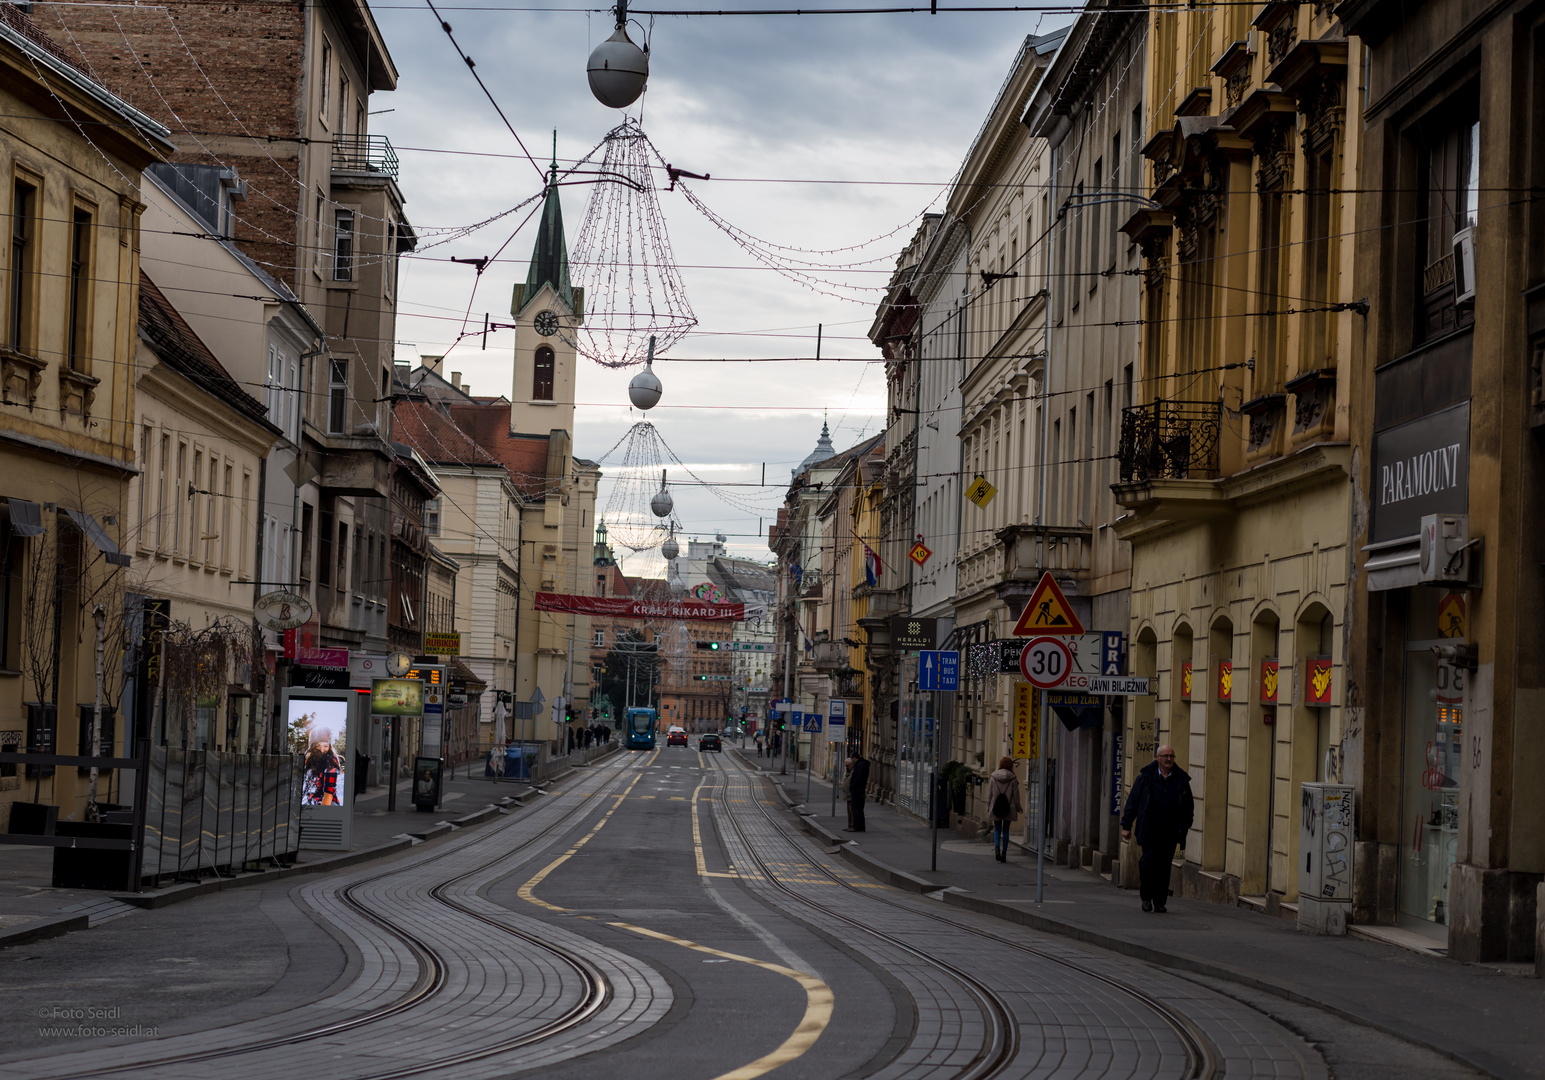 Straße in Zagreb